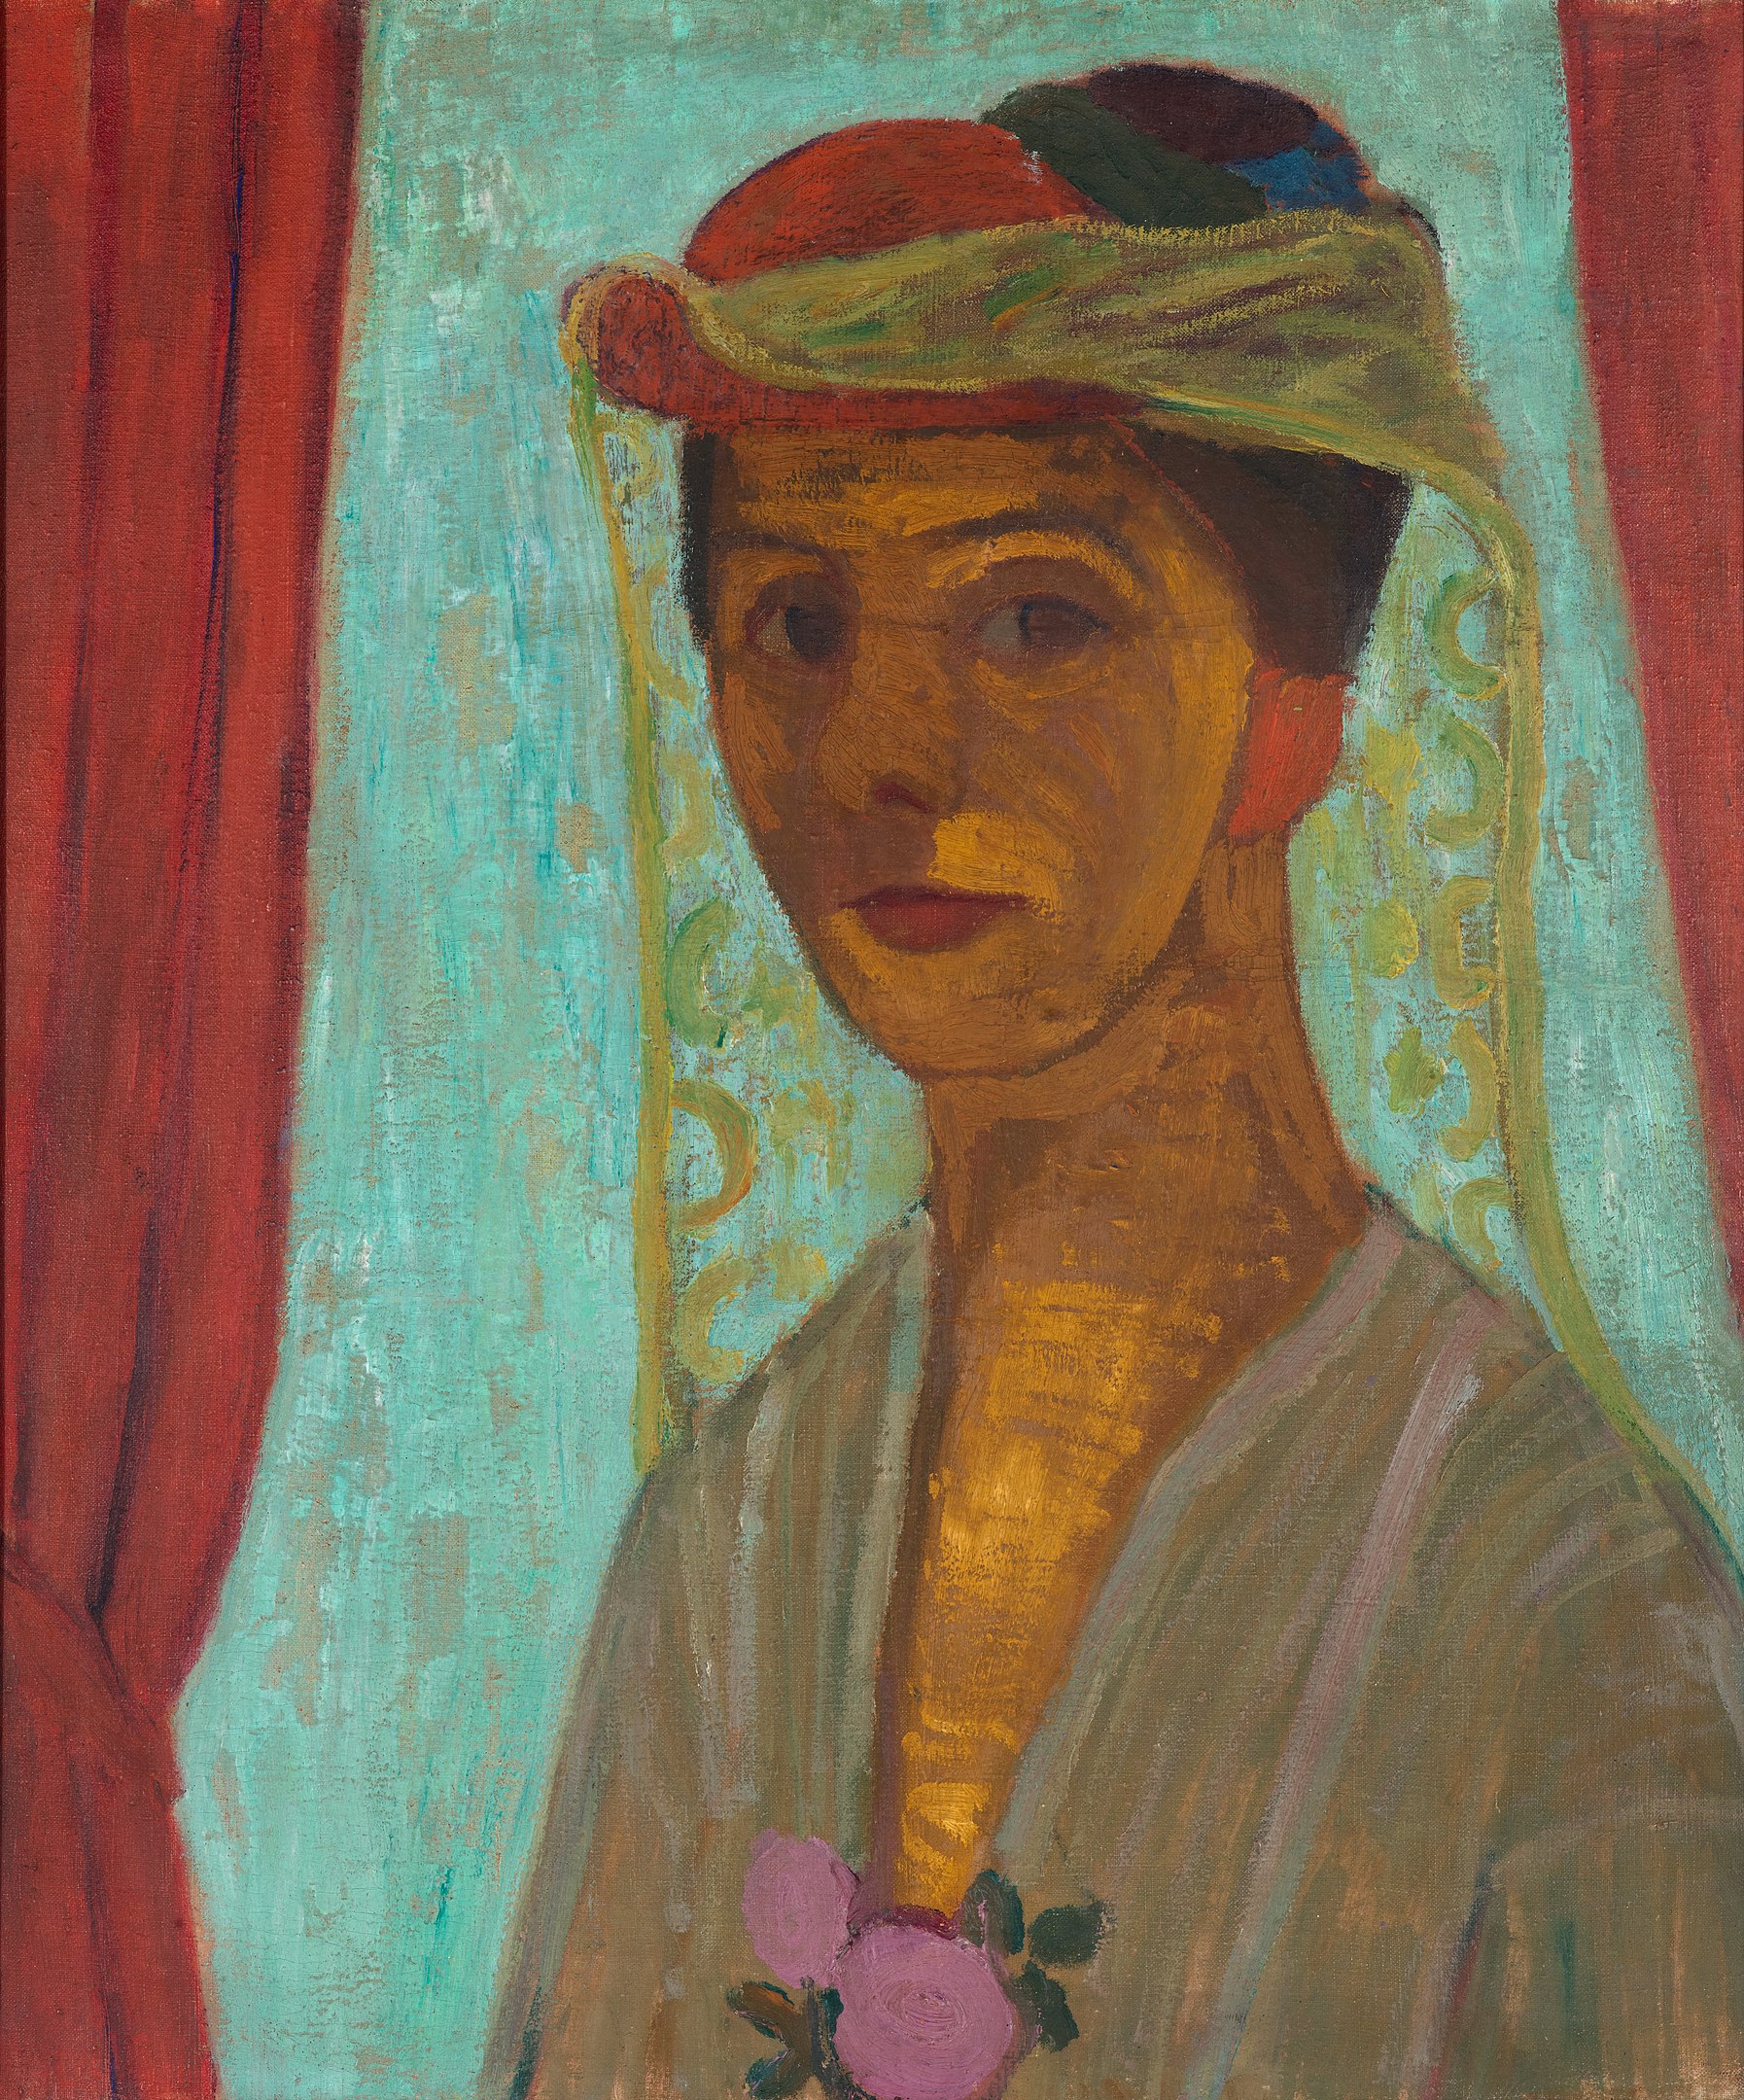 모자와 베일을 쓴 자화상 by Paula Modersohn-Becker - 1906년-1907년 - 79.8 x 89.6 cm 